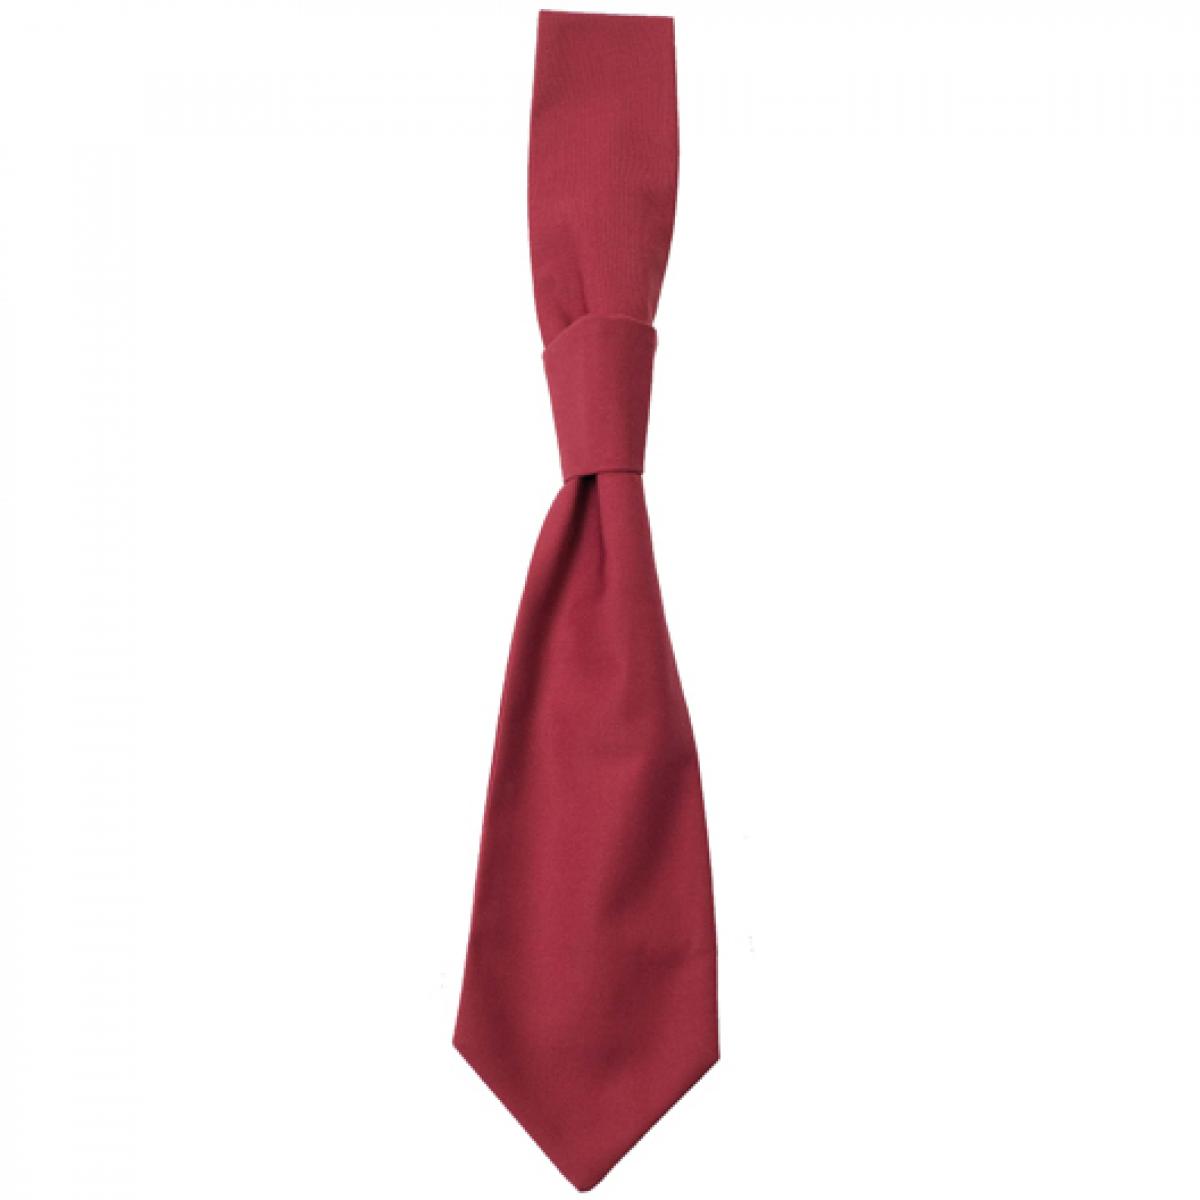 Hersteller: CG Workwear Herstellernummer: 01360-01 Artikelbezeichnung: Krawatte Messina / Zertifiziert nach Oeko-Tex 100 Farbe: Cherry